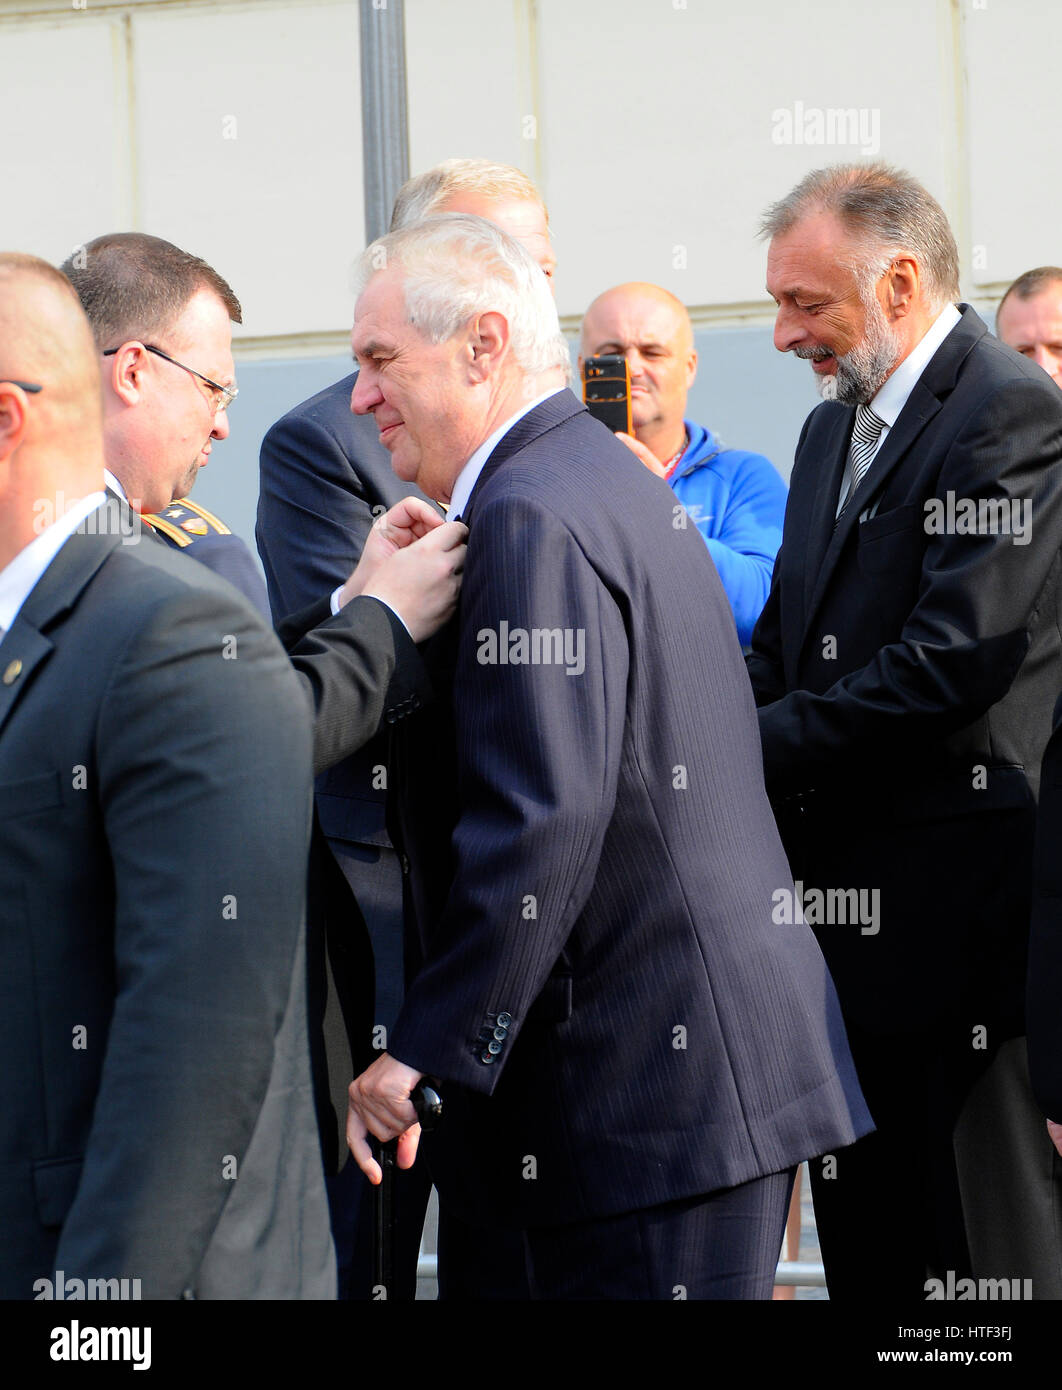 President Czech Republic Milos Zeman, protokolář Jindrich Forejt and a security guard at the Celebrations of St. Wenceslas in Stara Boleslav Stock Photo